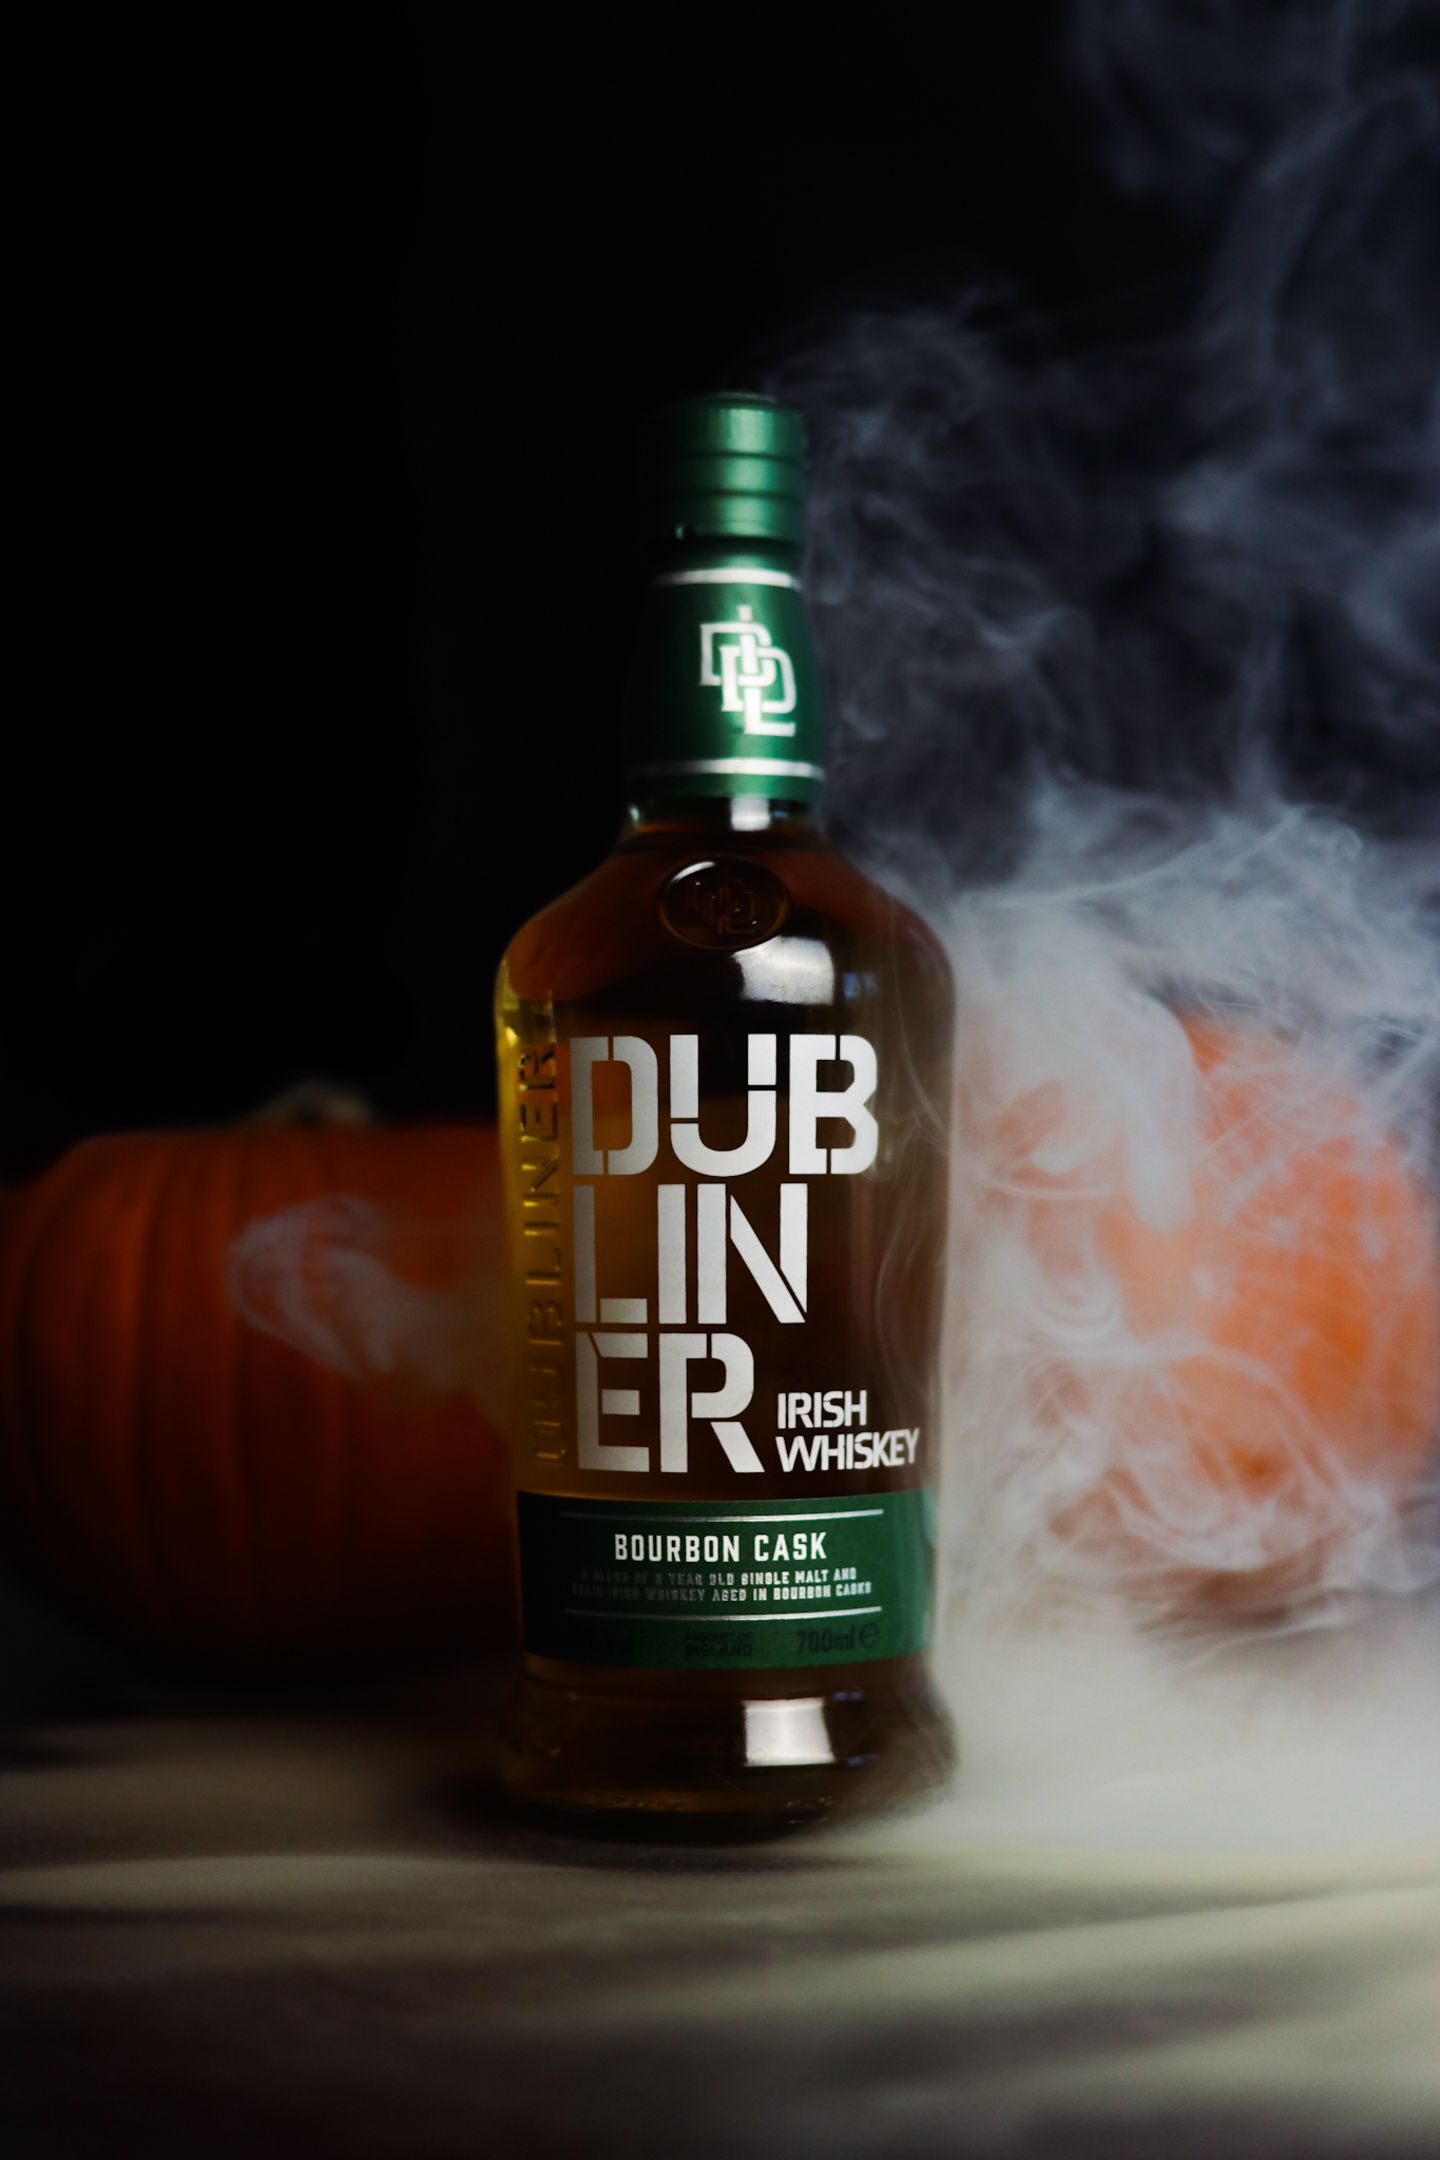 Ein Bourbon für alle Fälle: Der Dubliner Irish Whiskey Bourbon Cask aus der Hardenberg Distillerie kann vielleicht auch Whiskey-Anfänger:innen mit seiner weichen, milden Honigsüße und einer Spur pfeffriger Würze überzeugen. Ihr könnt ihn pur, in Longdrink-Varianten und in Cocktails genießen. Erhältlich in der 0,7 L-Flasche für 19 Euro.